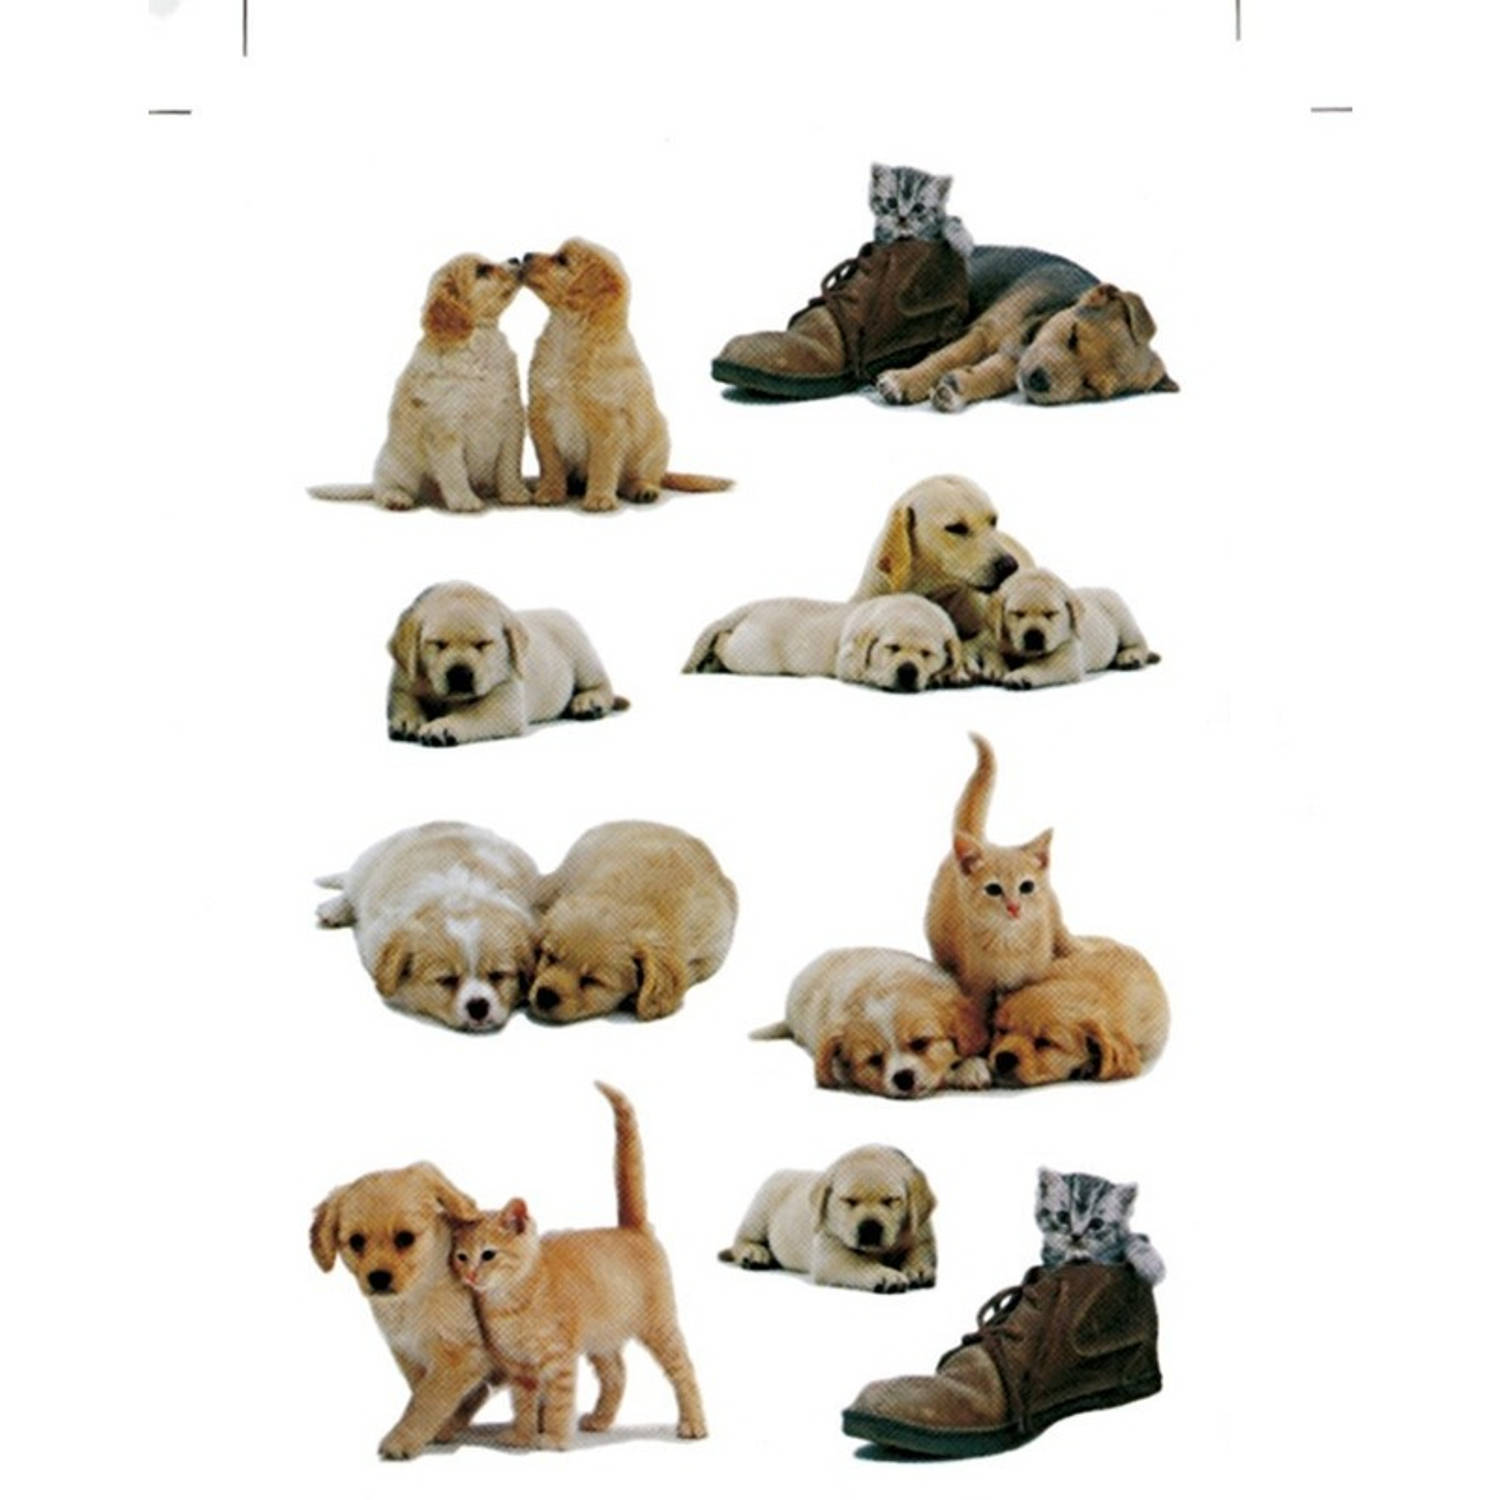 27x Honden/puppy Stickers Met Katten/poezen -Dieren Kinderstickers - Stickervellen - Knutselspullen